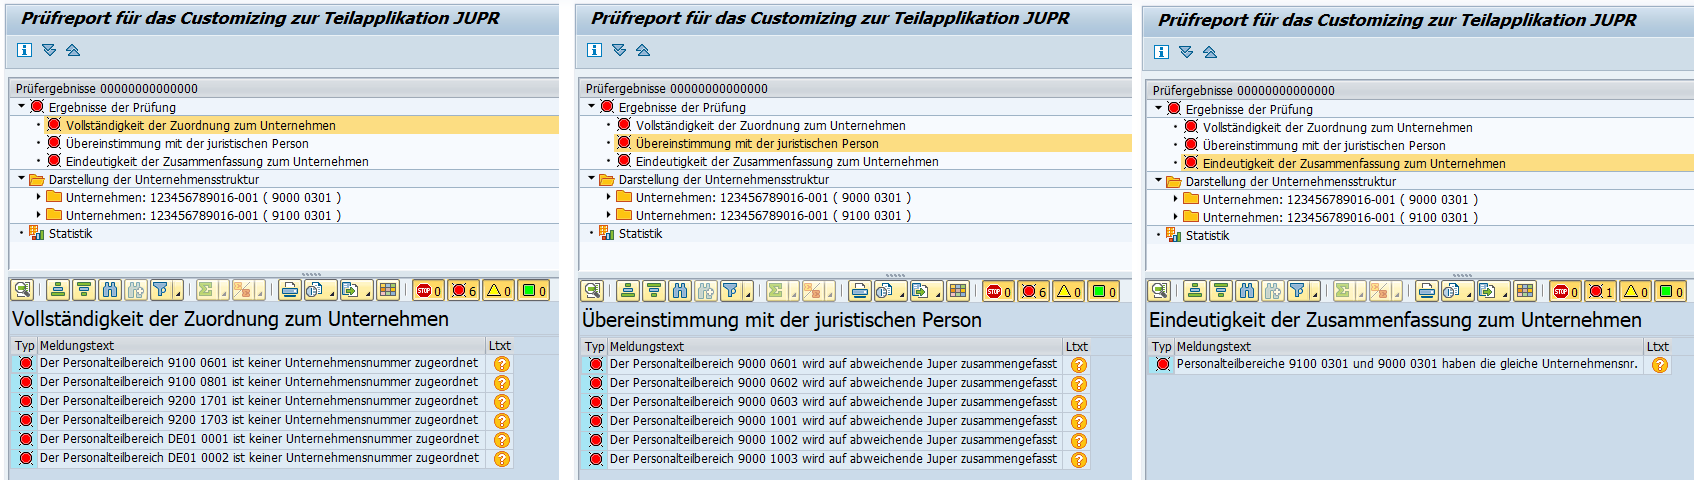 Ausgabe des Customizing-Prüfreports zur UV-Unternehmensnummer bzw. Teilapplikation JUPR